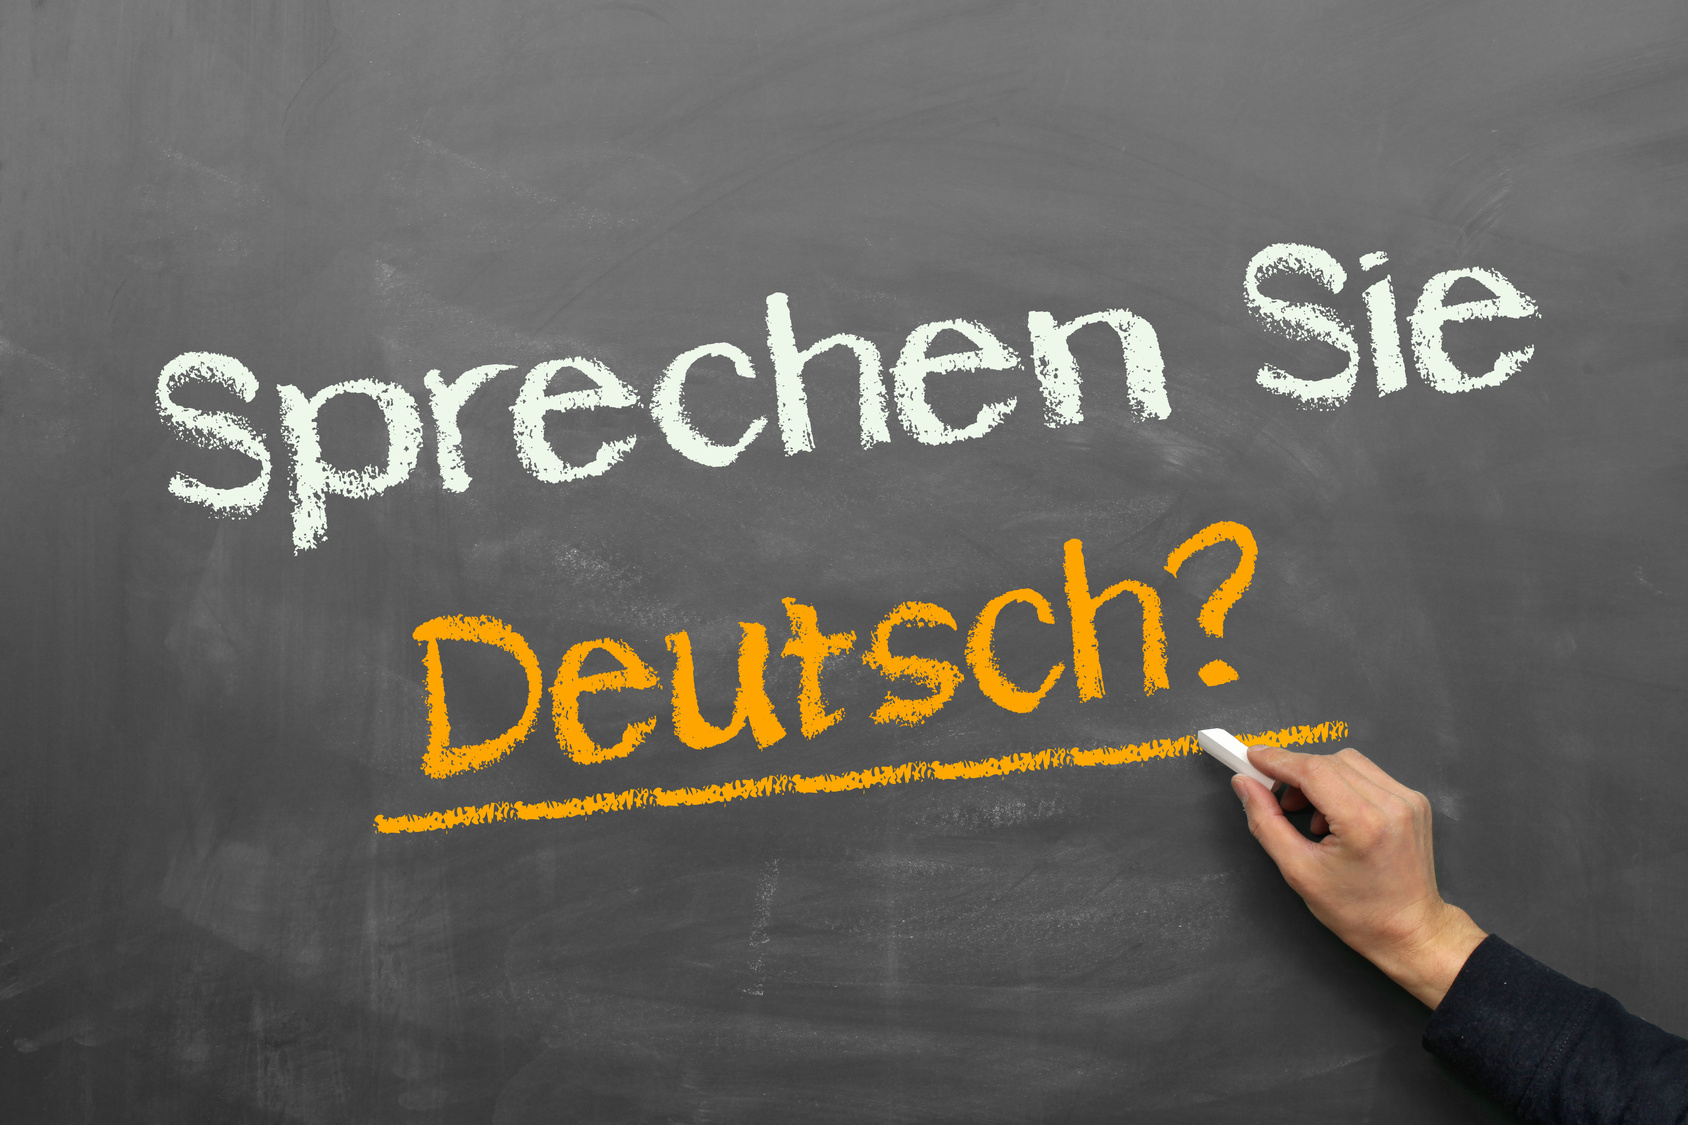 Sprechen Sie Deutsch?